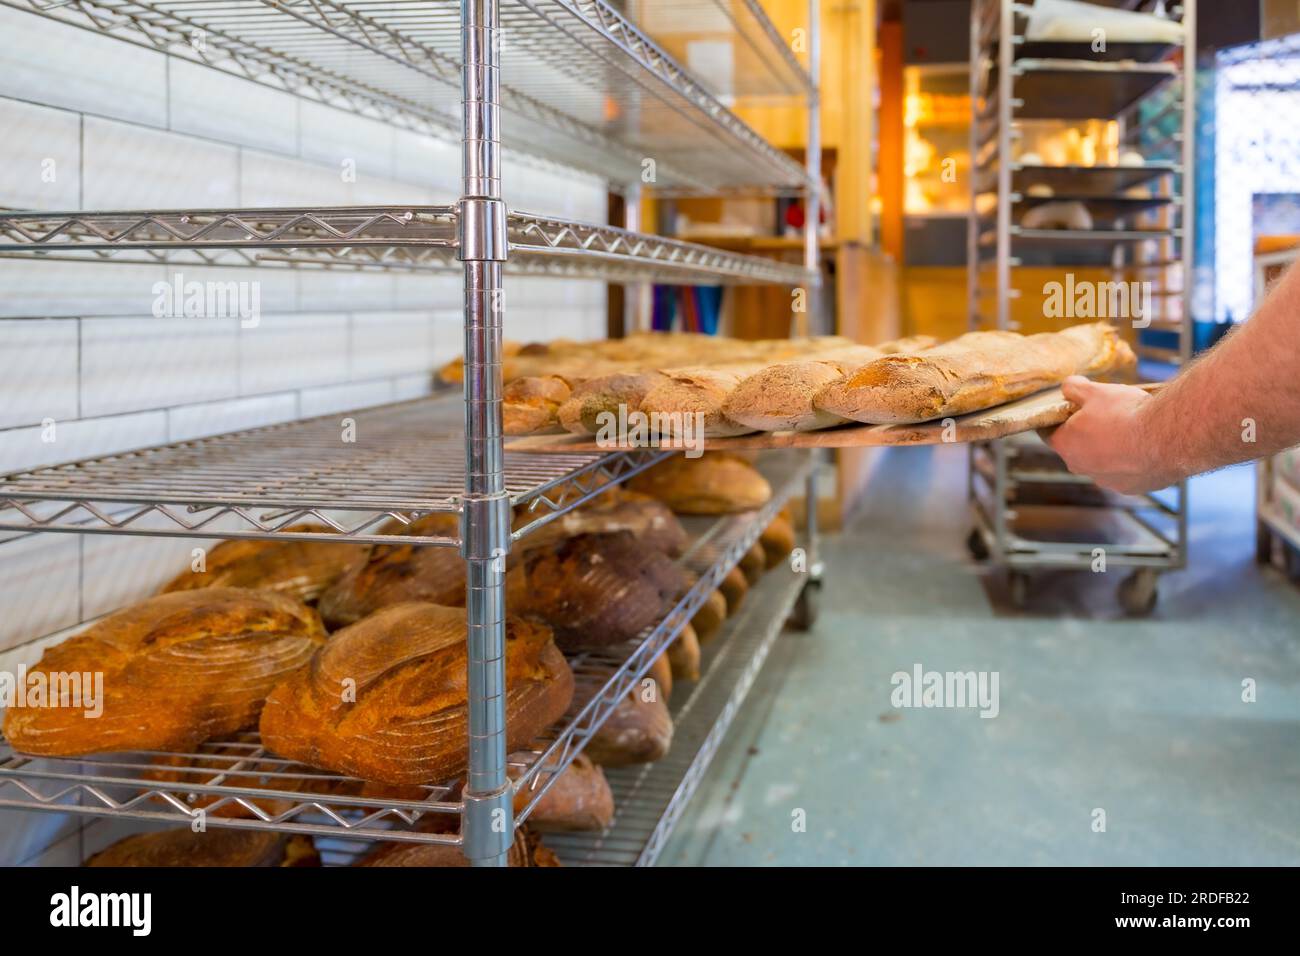 Bäckerei in der Kunsthandwerkstatt, die die Brotlaibe des Ofens auf die Regale stellt Stockfoto